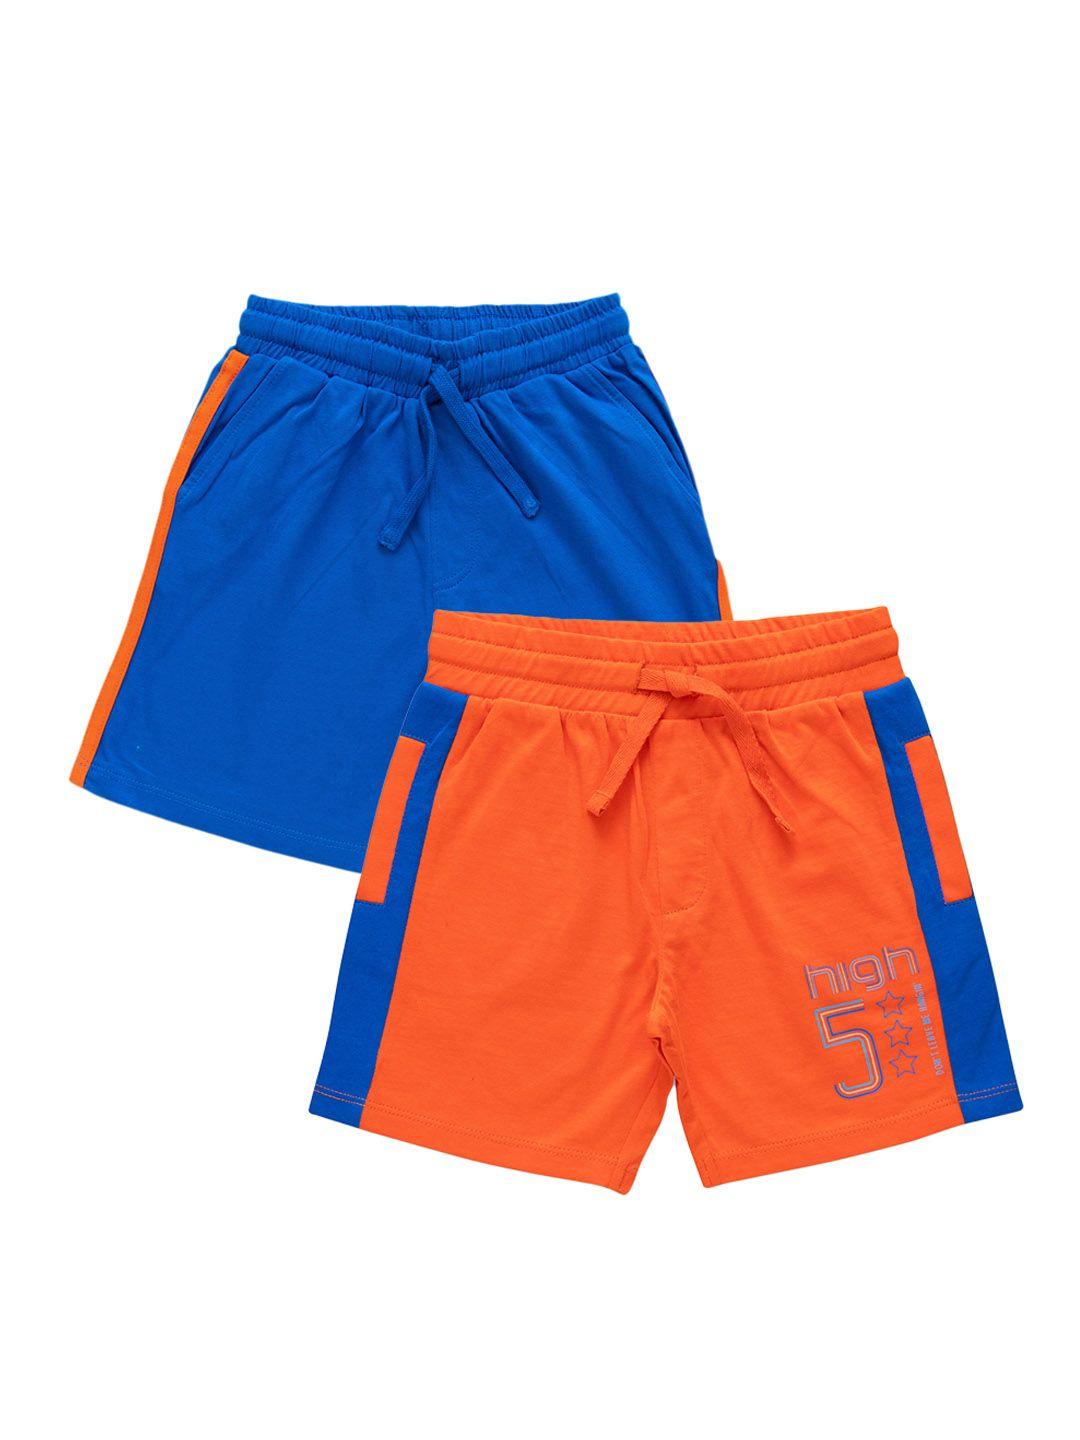 juscubs boys multicoloured outdoor shorts